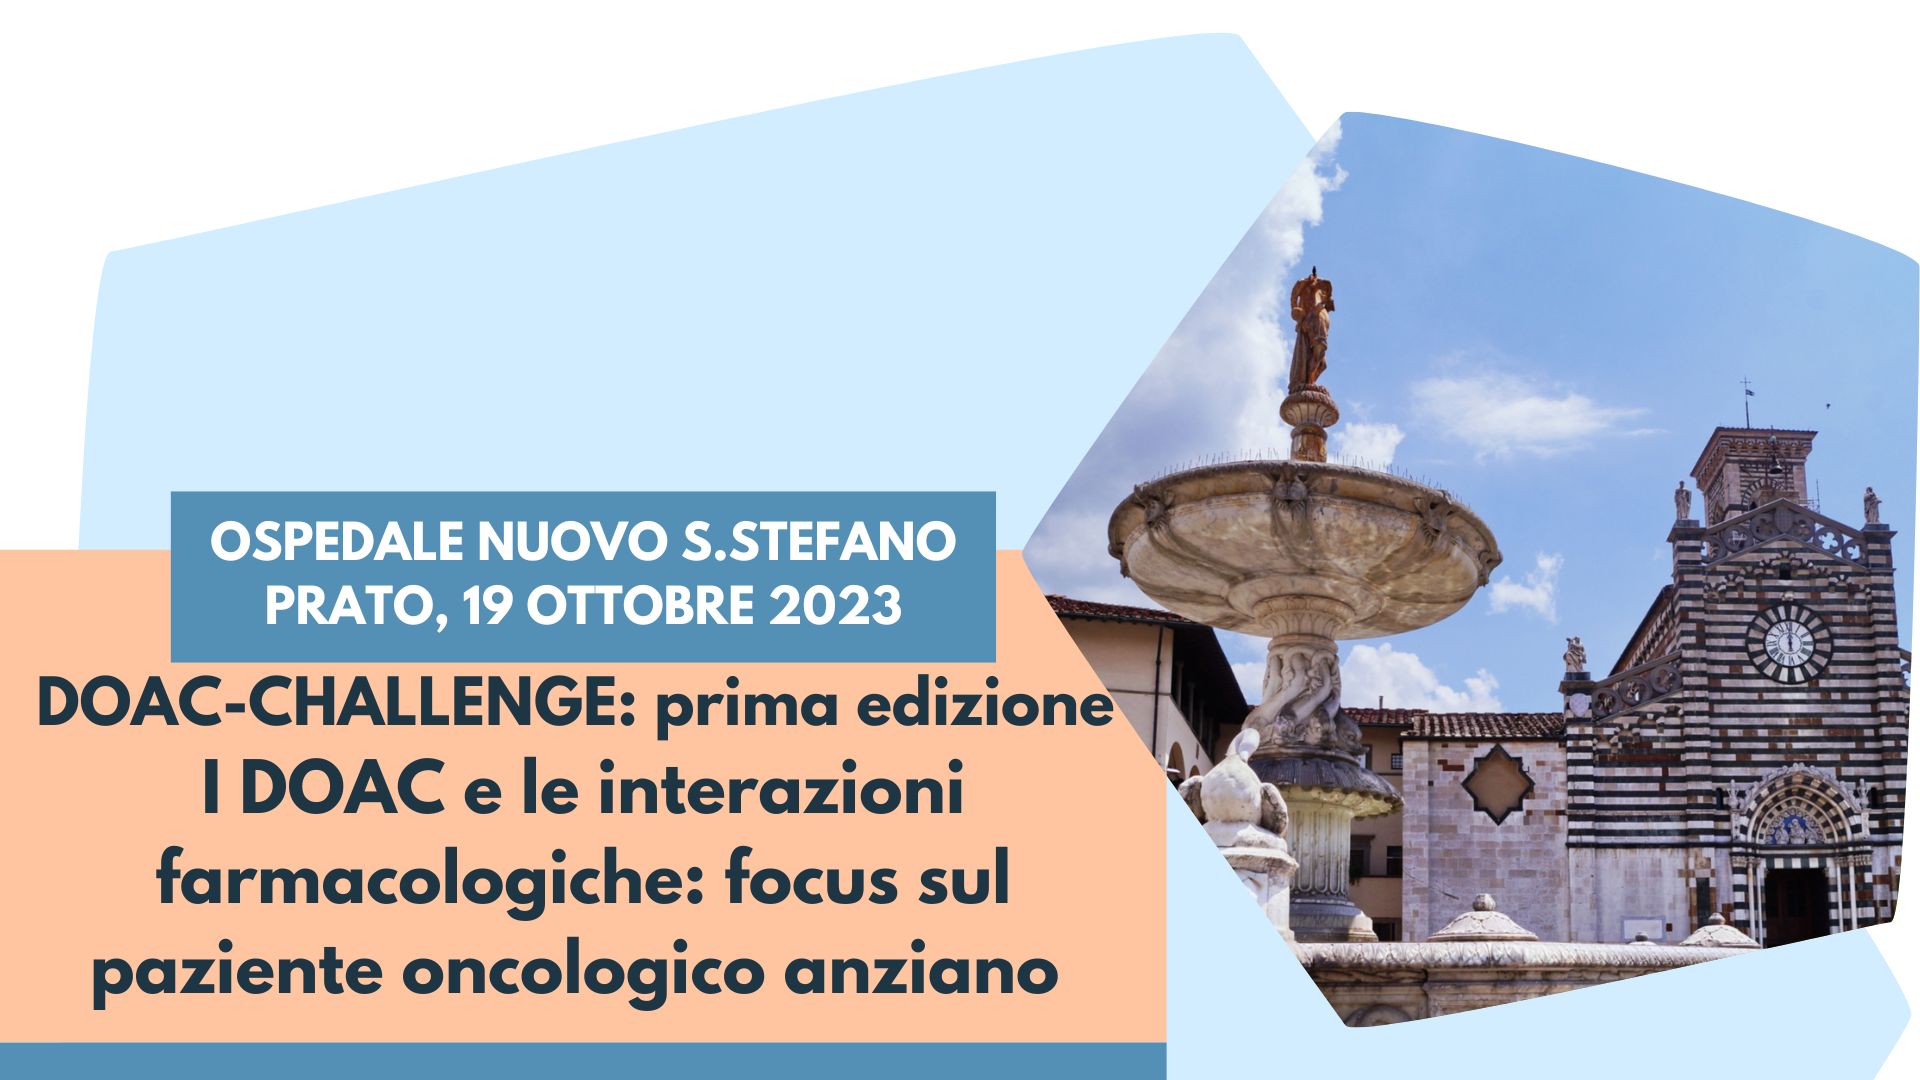 DOAC-CHALLENGE: prima edizione. I DOAC e le interazioni farmacologiche: focus sul paziente oncologico anziano – Prato, 19 Ottobre 2023